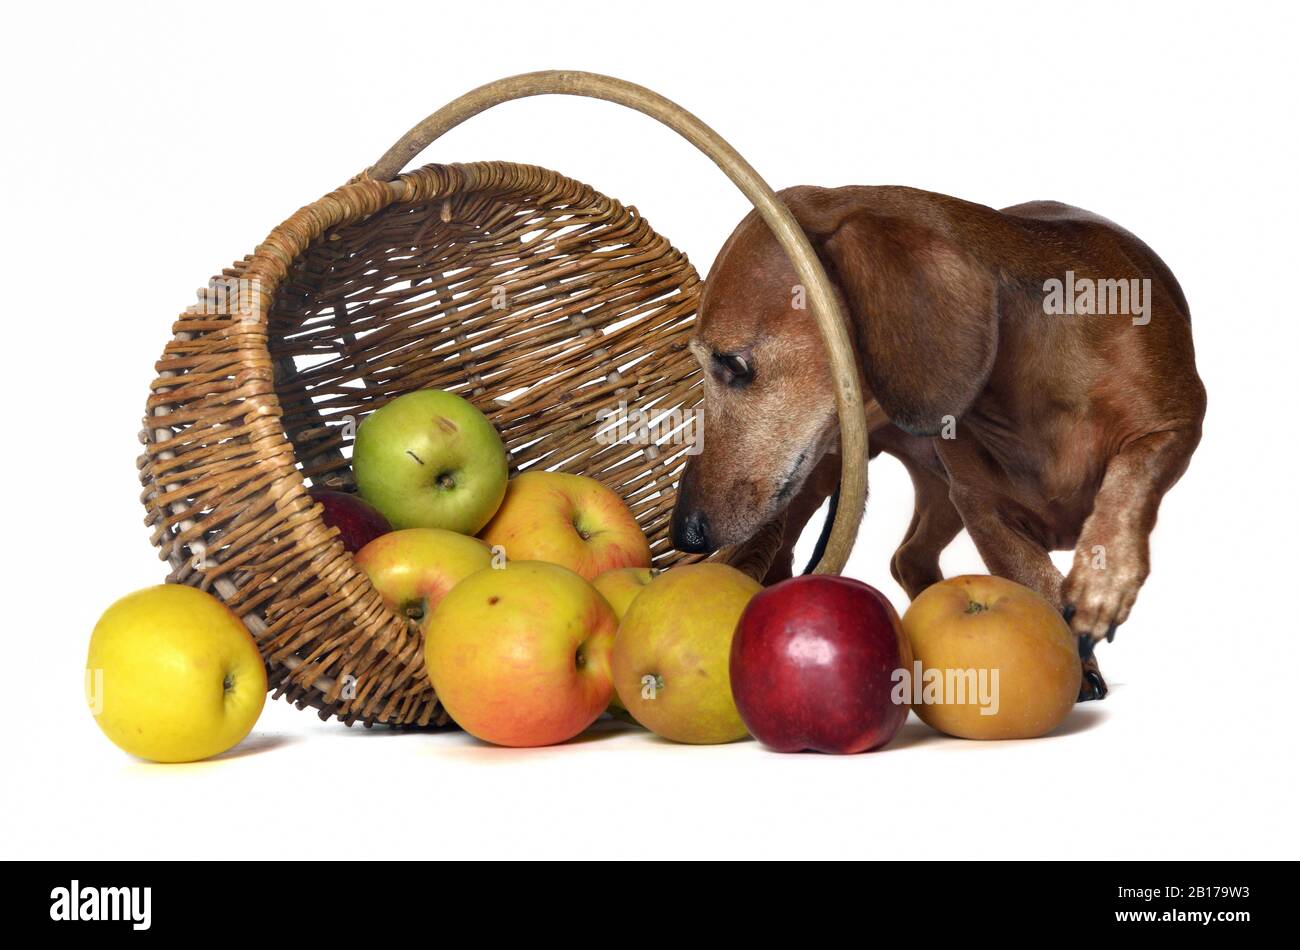 Dachshund à poil court, chien de saucisse à poil court, chien domestique (Canis lupus F. familiaris), le mâle semble curieusement sortir derrière un panier de pomme Banque D'Images